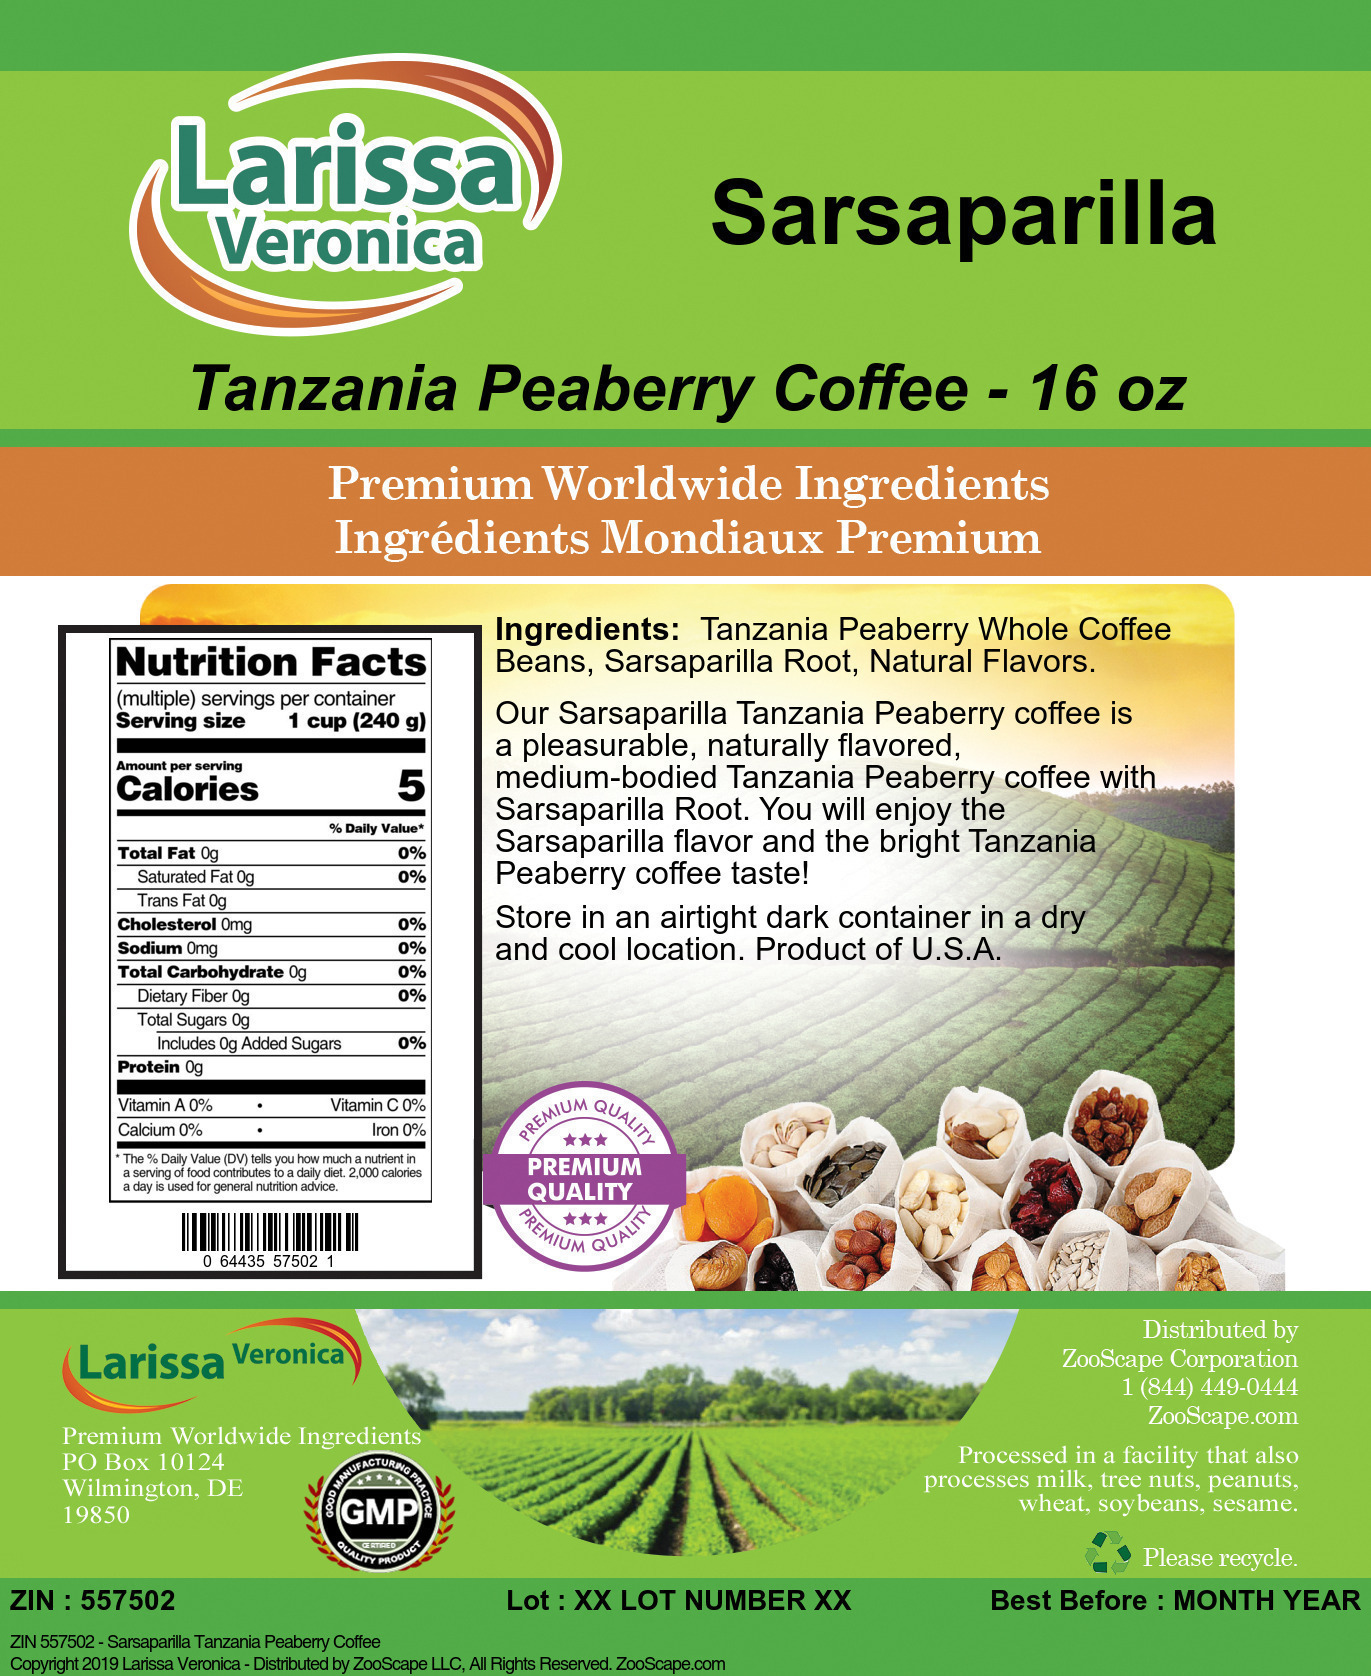 Sarsaparilla Tanzania Peaberry Coffee - Label